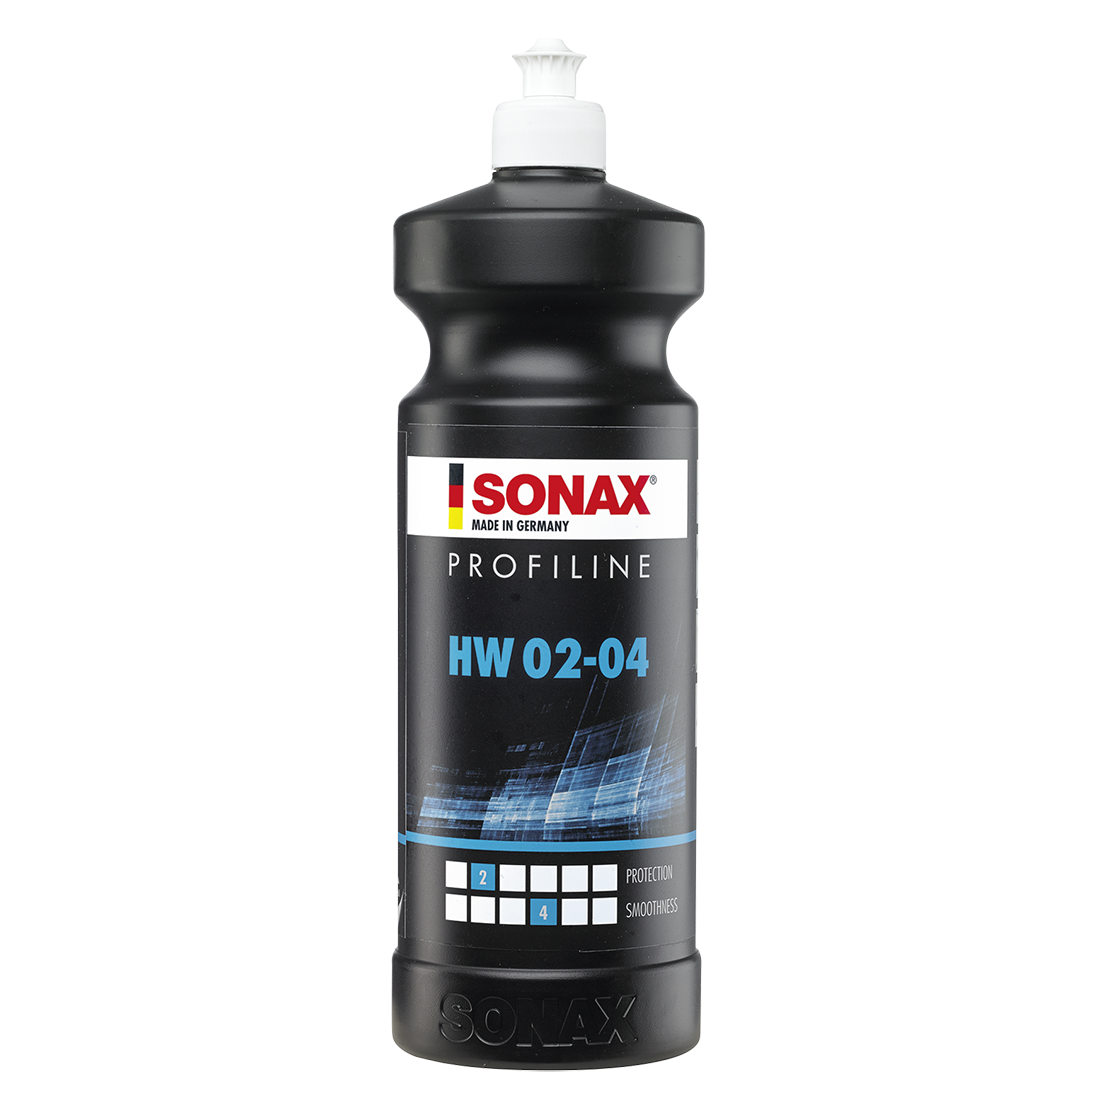 SONAX Profiline HW 02-04 1L Hardwax (Silicon Free)